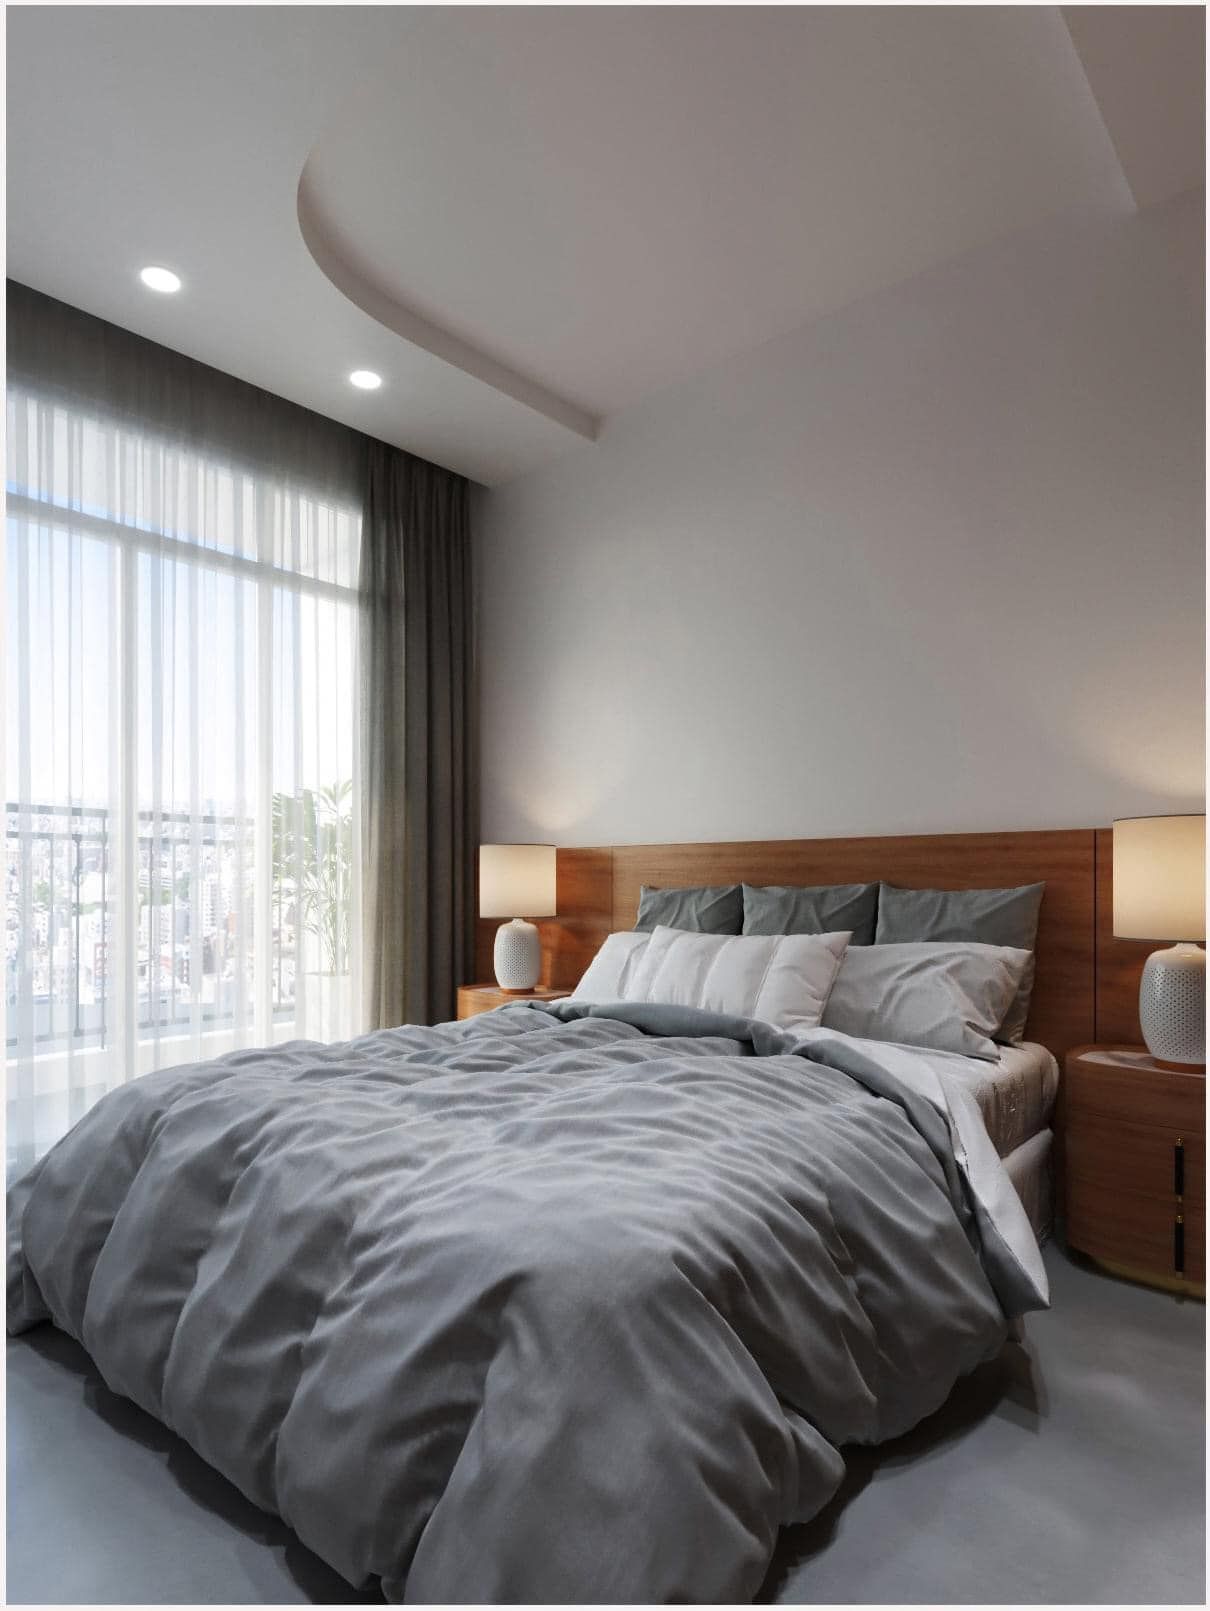 Phòng ngủ được bố trí cạnh ban công giúp điều hòa không khí mang lại cảm giác thoải mái nhất khi nghỉ dưỡng tại đây